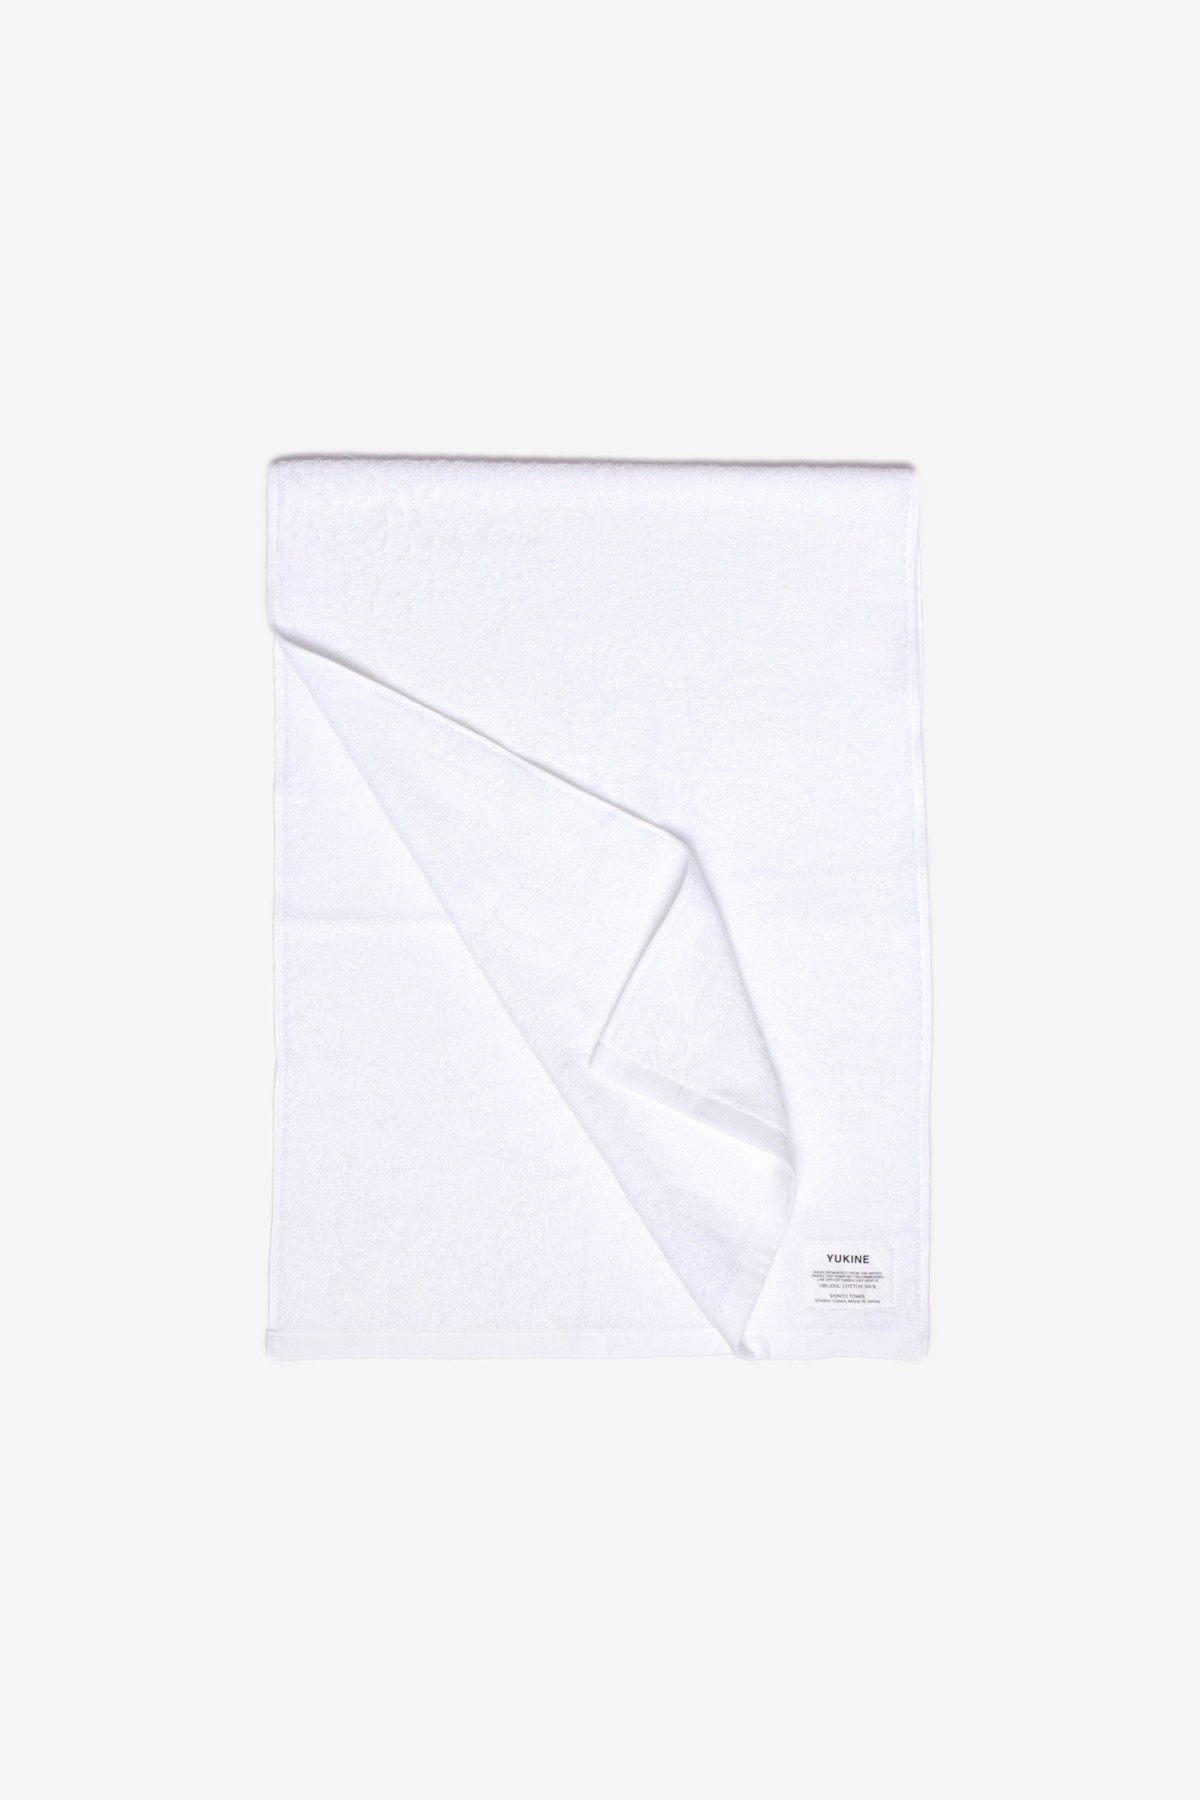 Shinto Yukine Mini Bath Towel Shiro in White